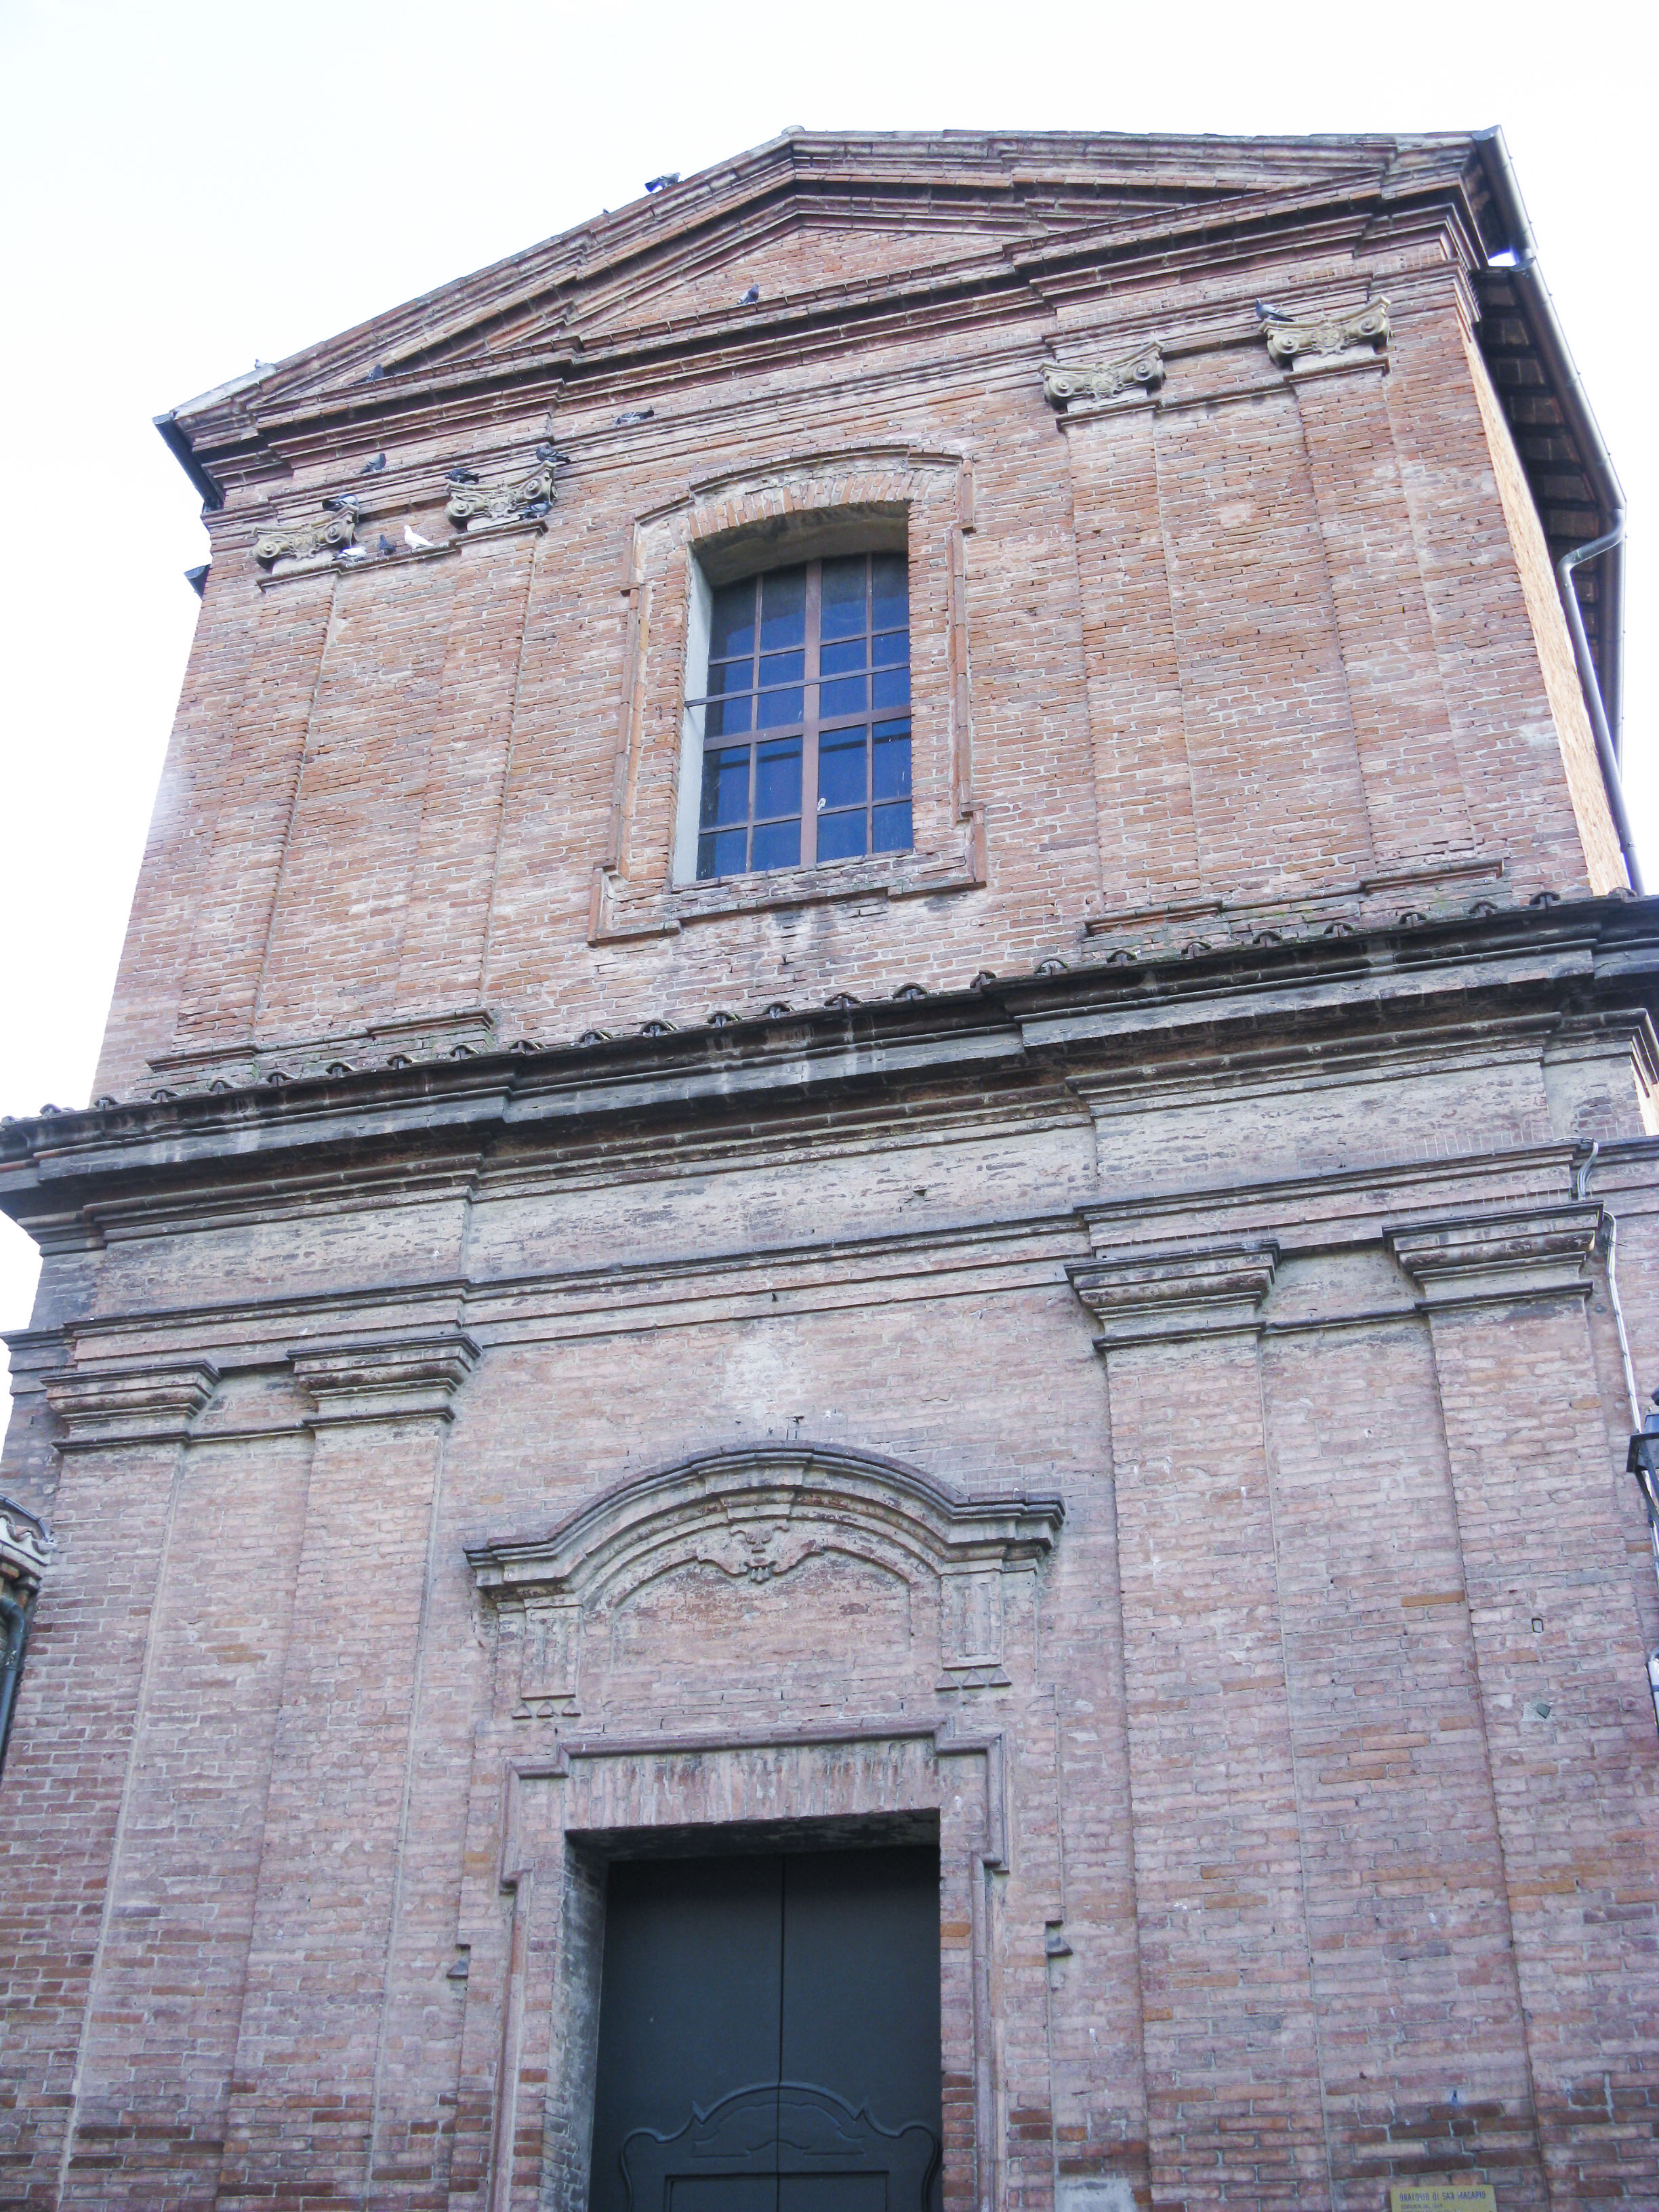 Chiesa di San Macario (chiesa, cittadina) - Imola (BO) 